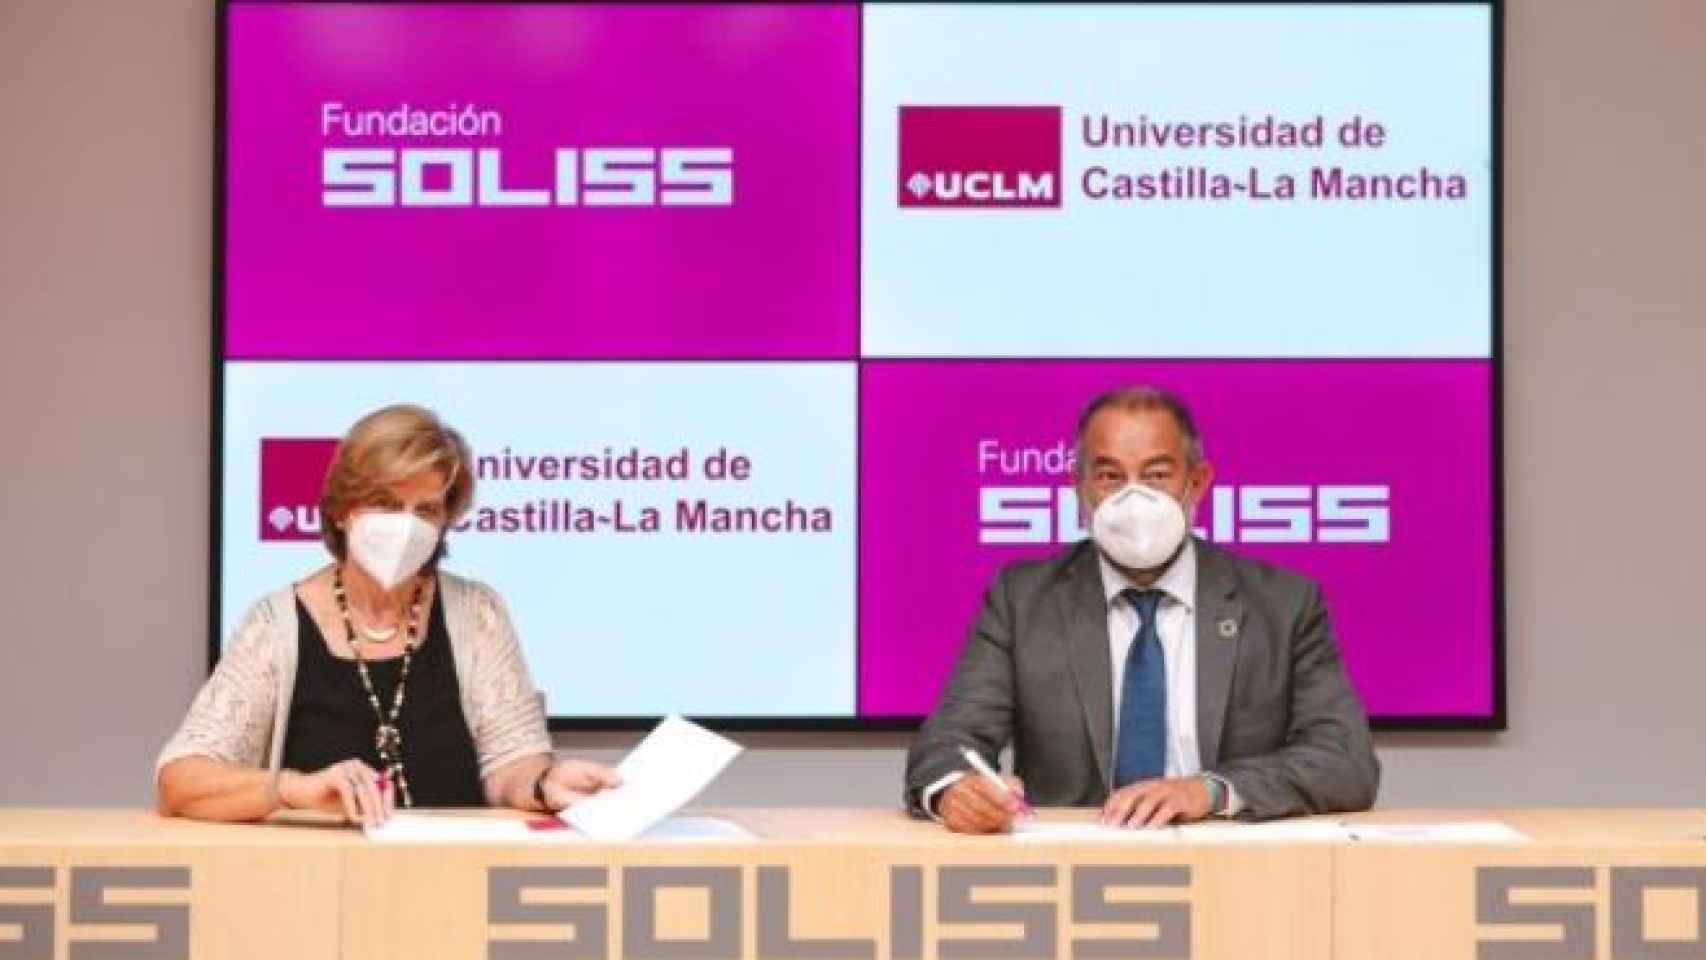 La presidenta de la Fundación Soliss, María Luisa González Bueno, y el rector de la UCLM, Julián Garde